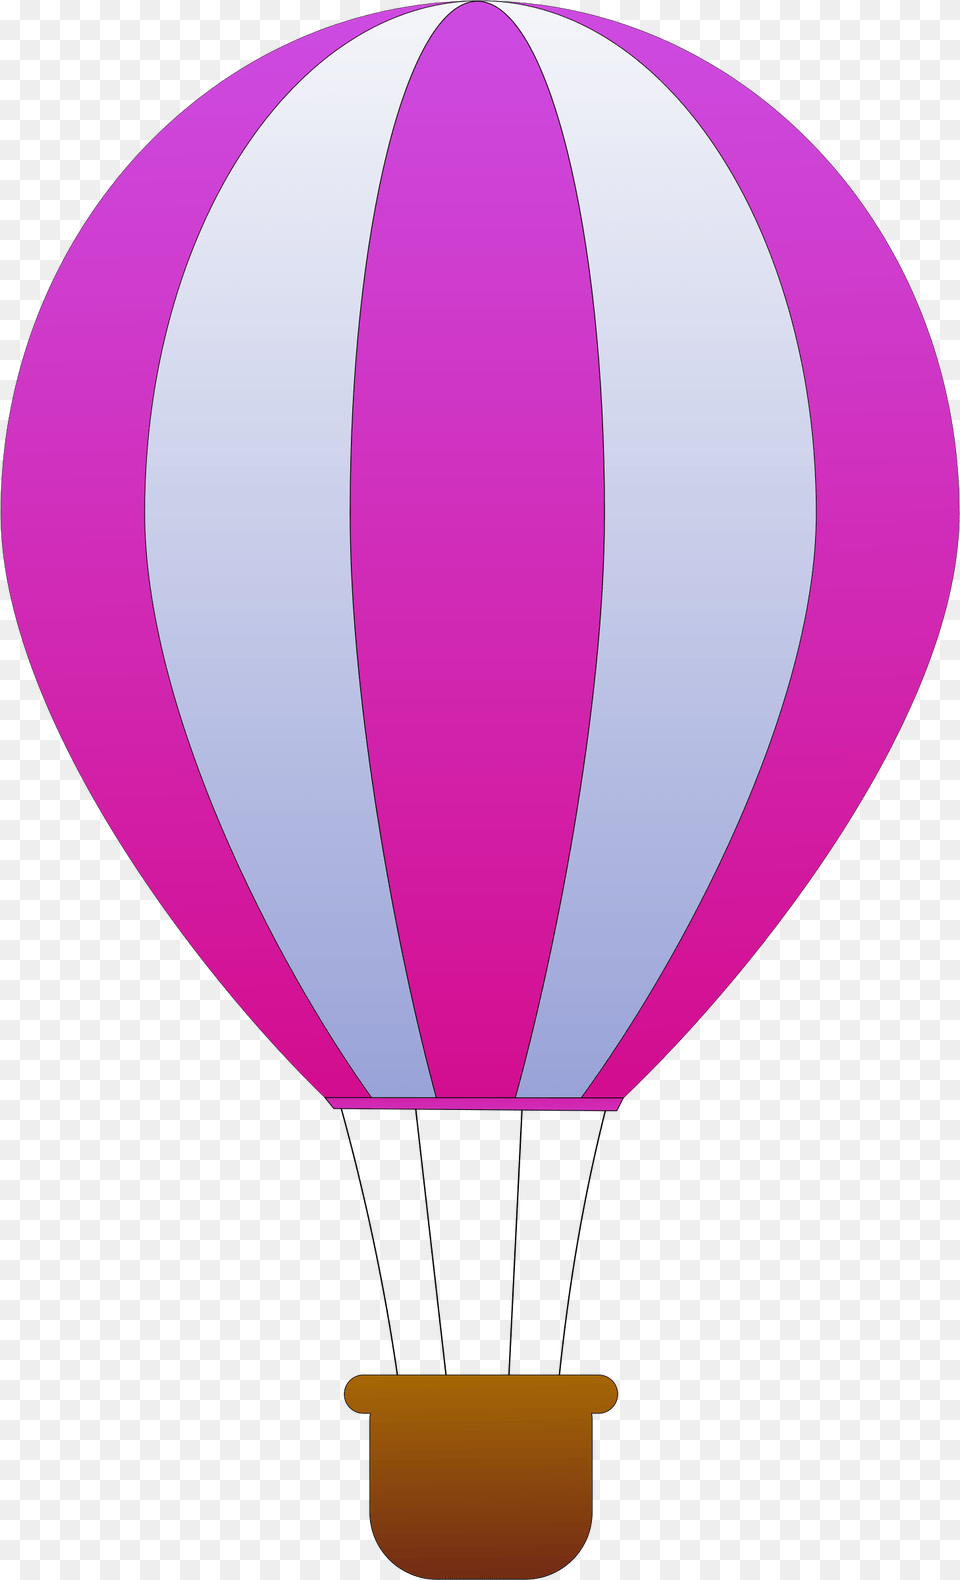 Air Balloon, Aircraft, Hot Air Balloon, Transportation, Vehicle Png